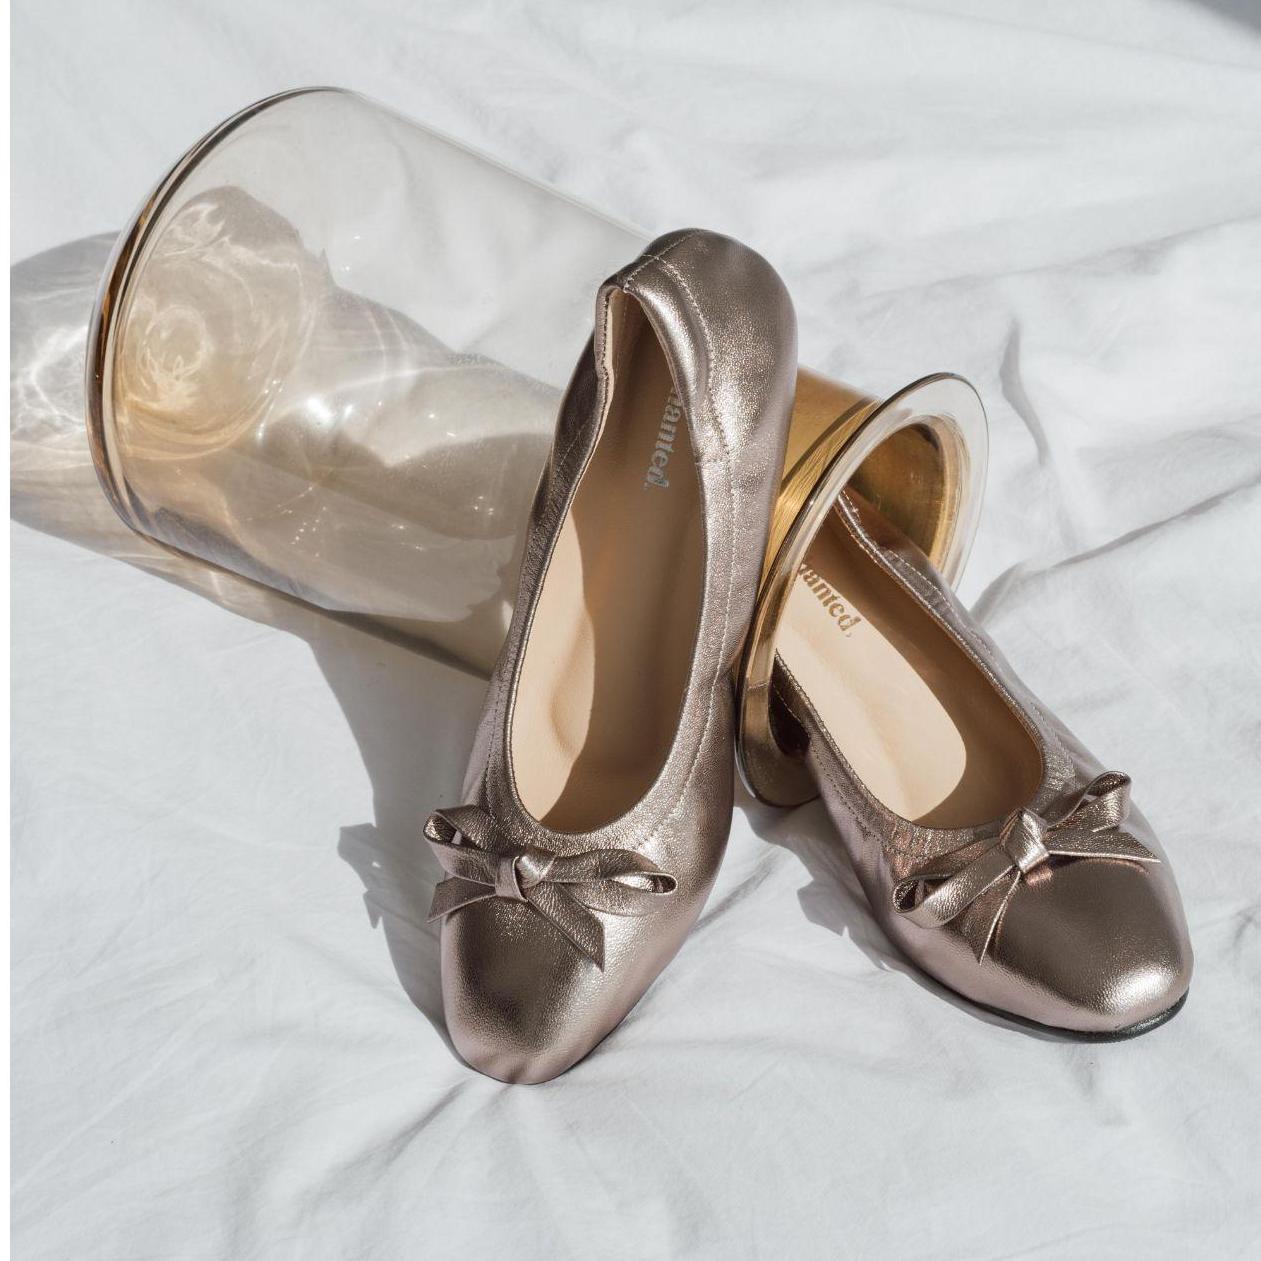 พร้อมส่ง Enchanted Bicerin รองเท้าหนังแกะ ส้นเตี้ย Flat Ballerina หนังแกะนิ่มมาก ไม่กัดเท้า